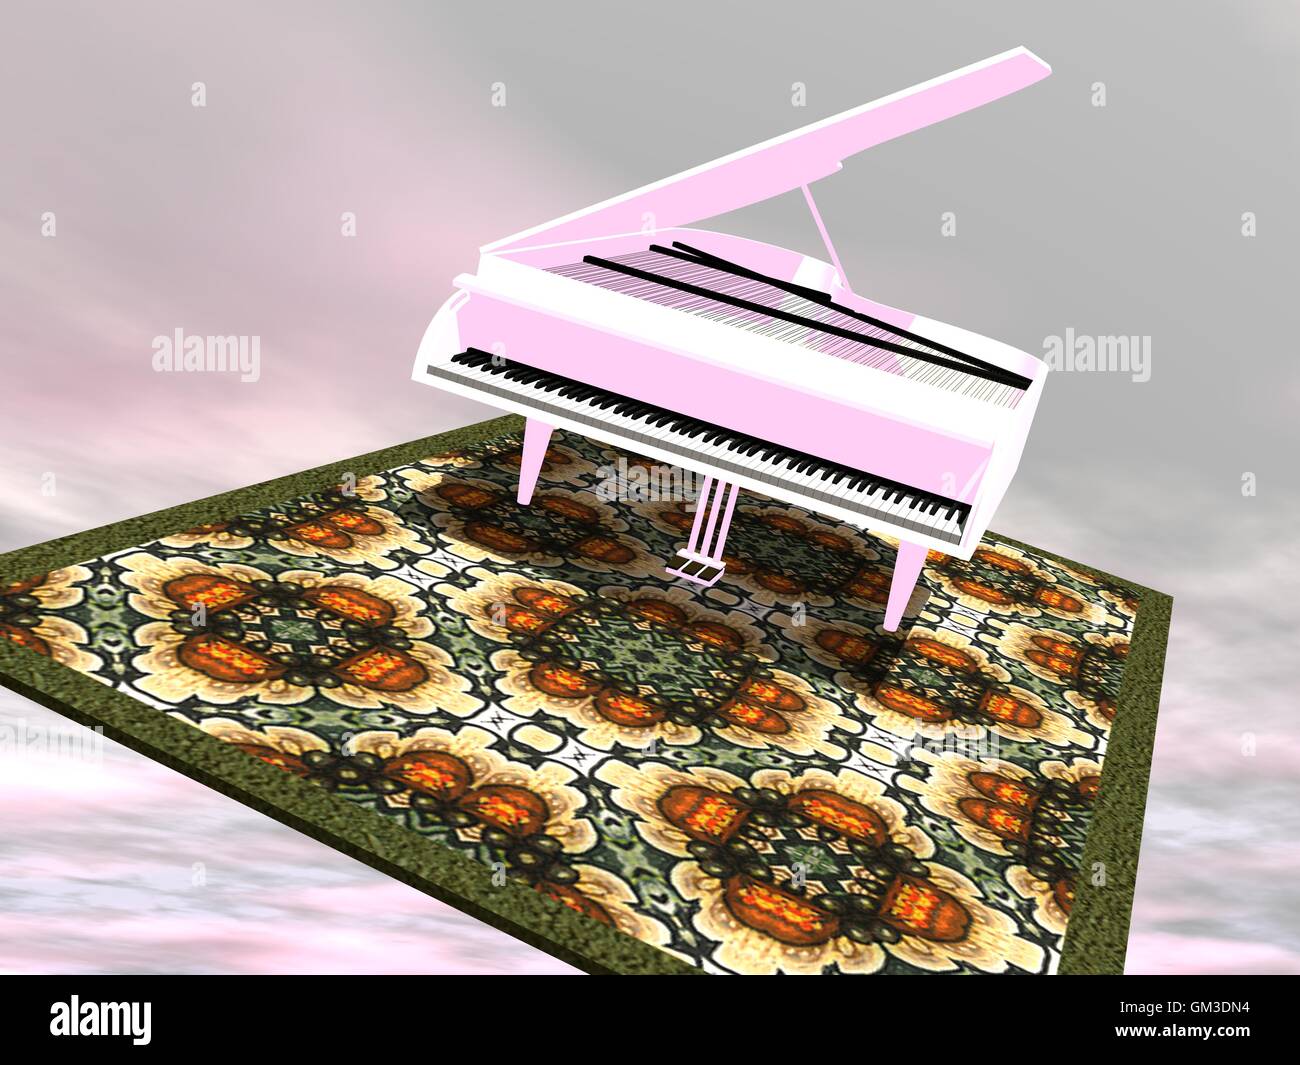 Piano sur un tapis volant - 3D render Banque D'Images